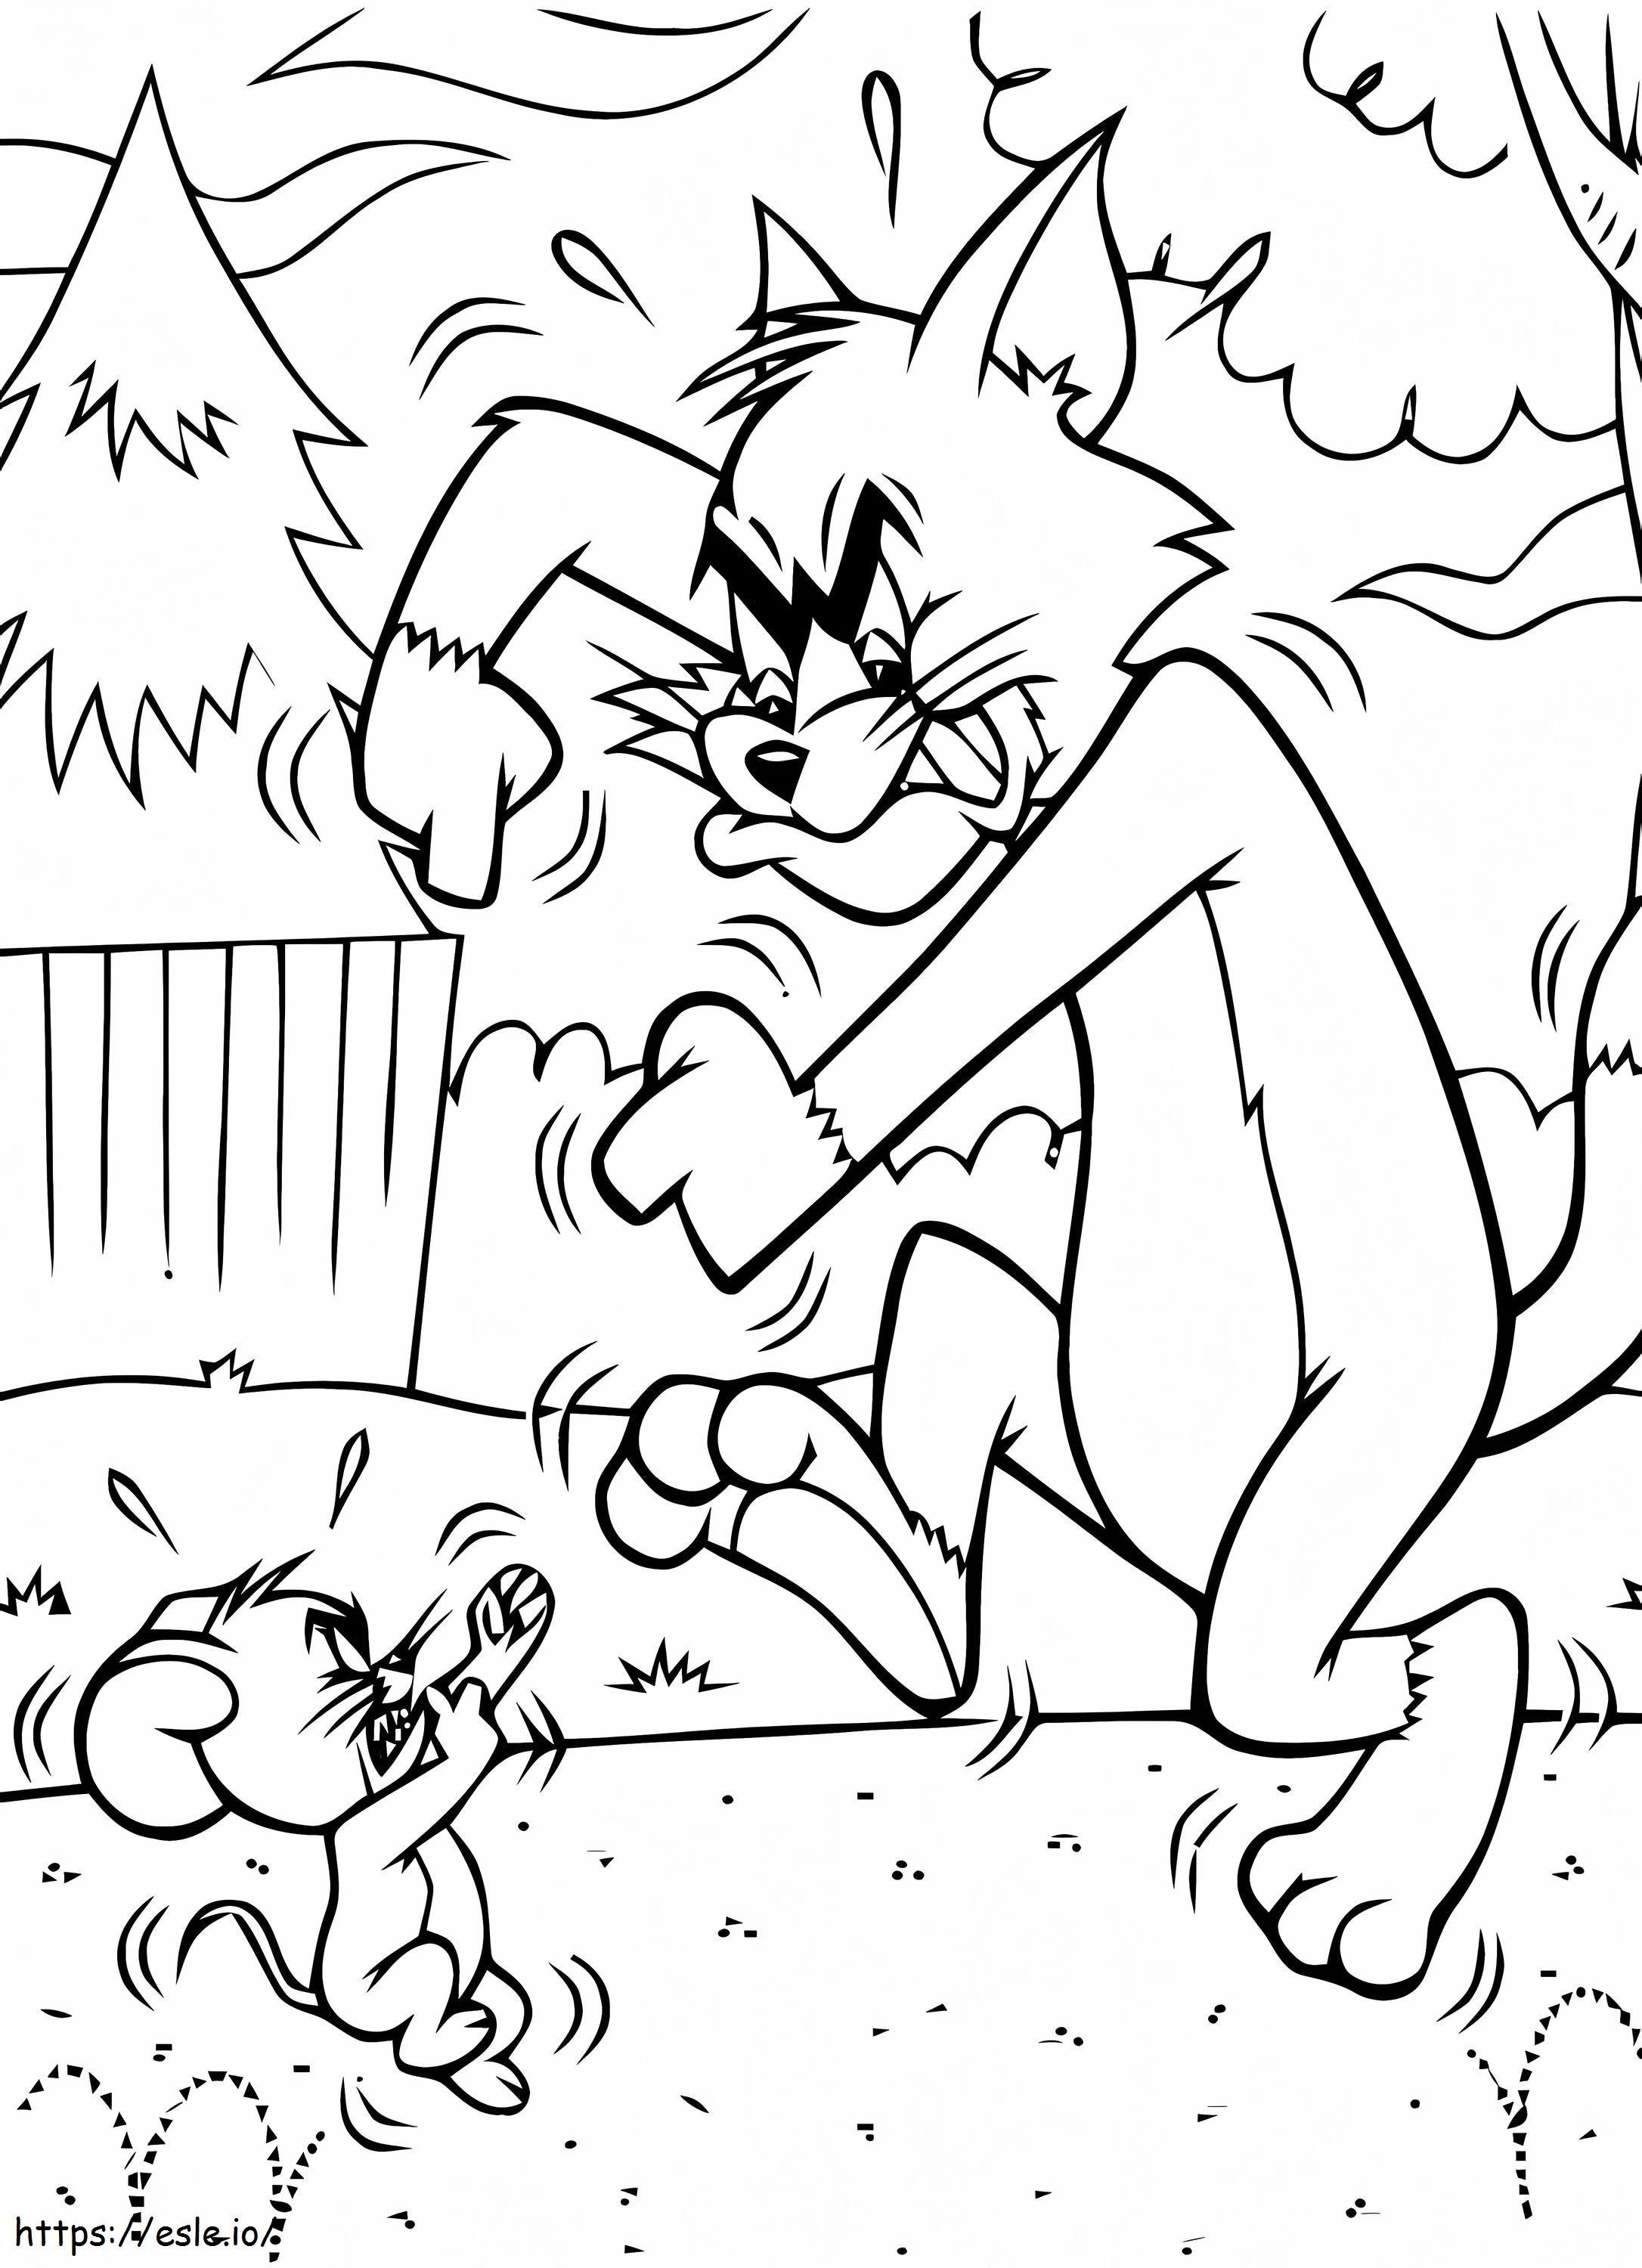 1548380318 Colorat pentru copii Tom și Jerry 58876 de colorat